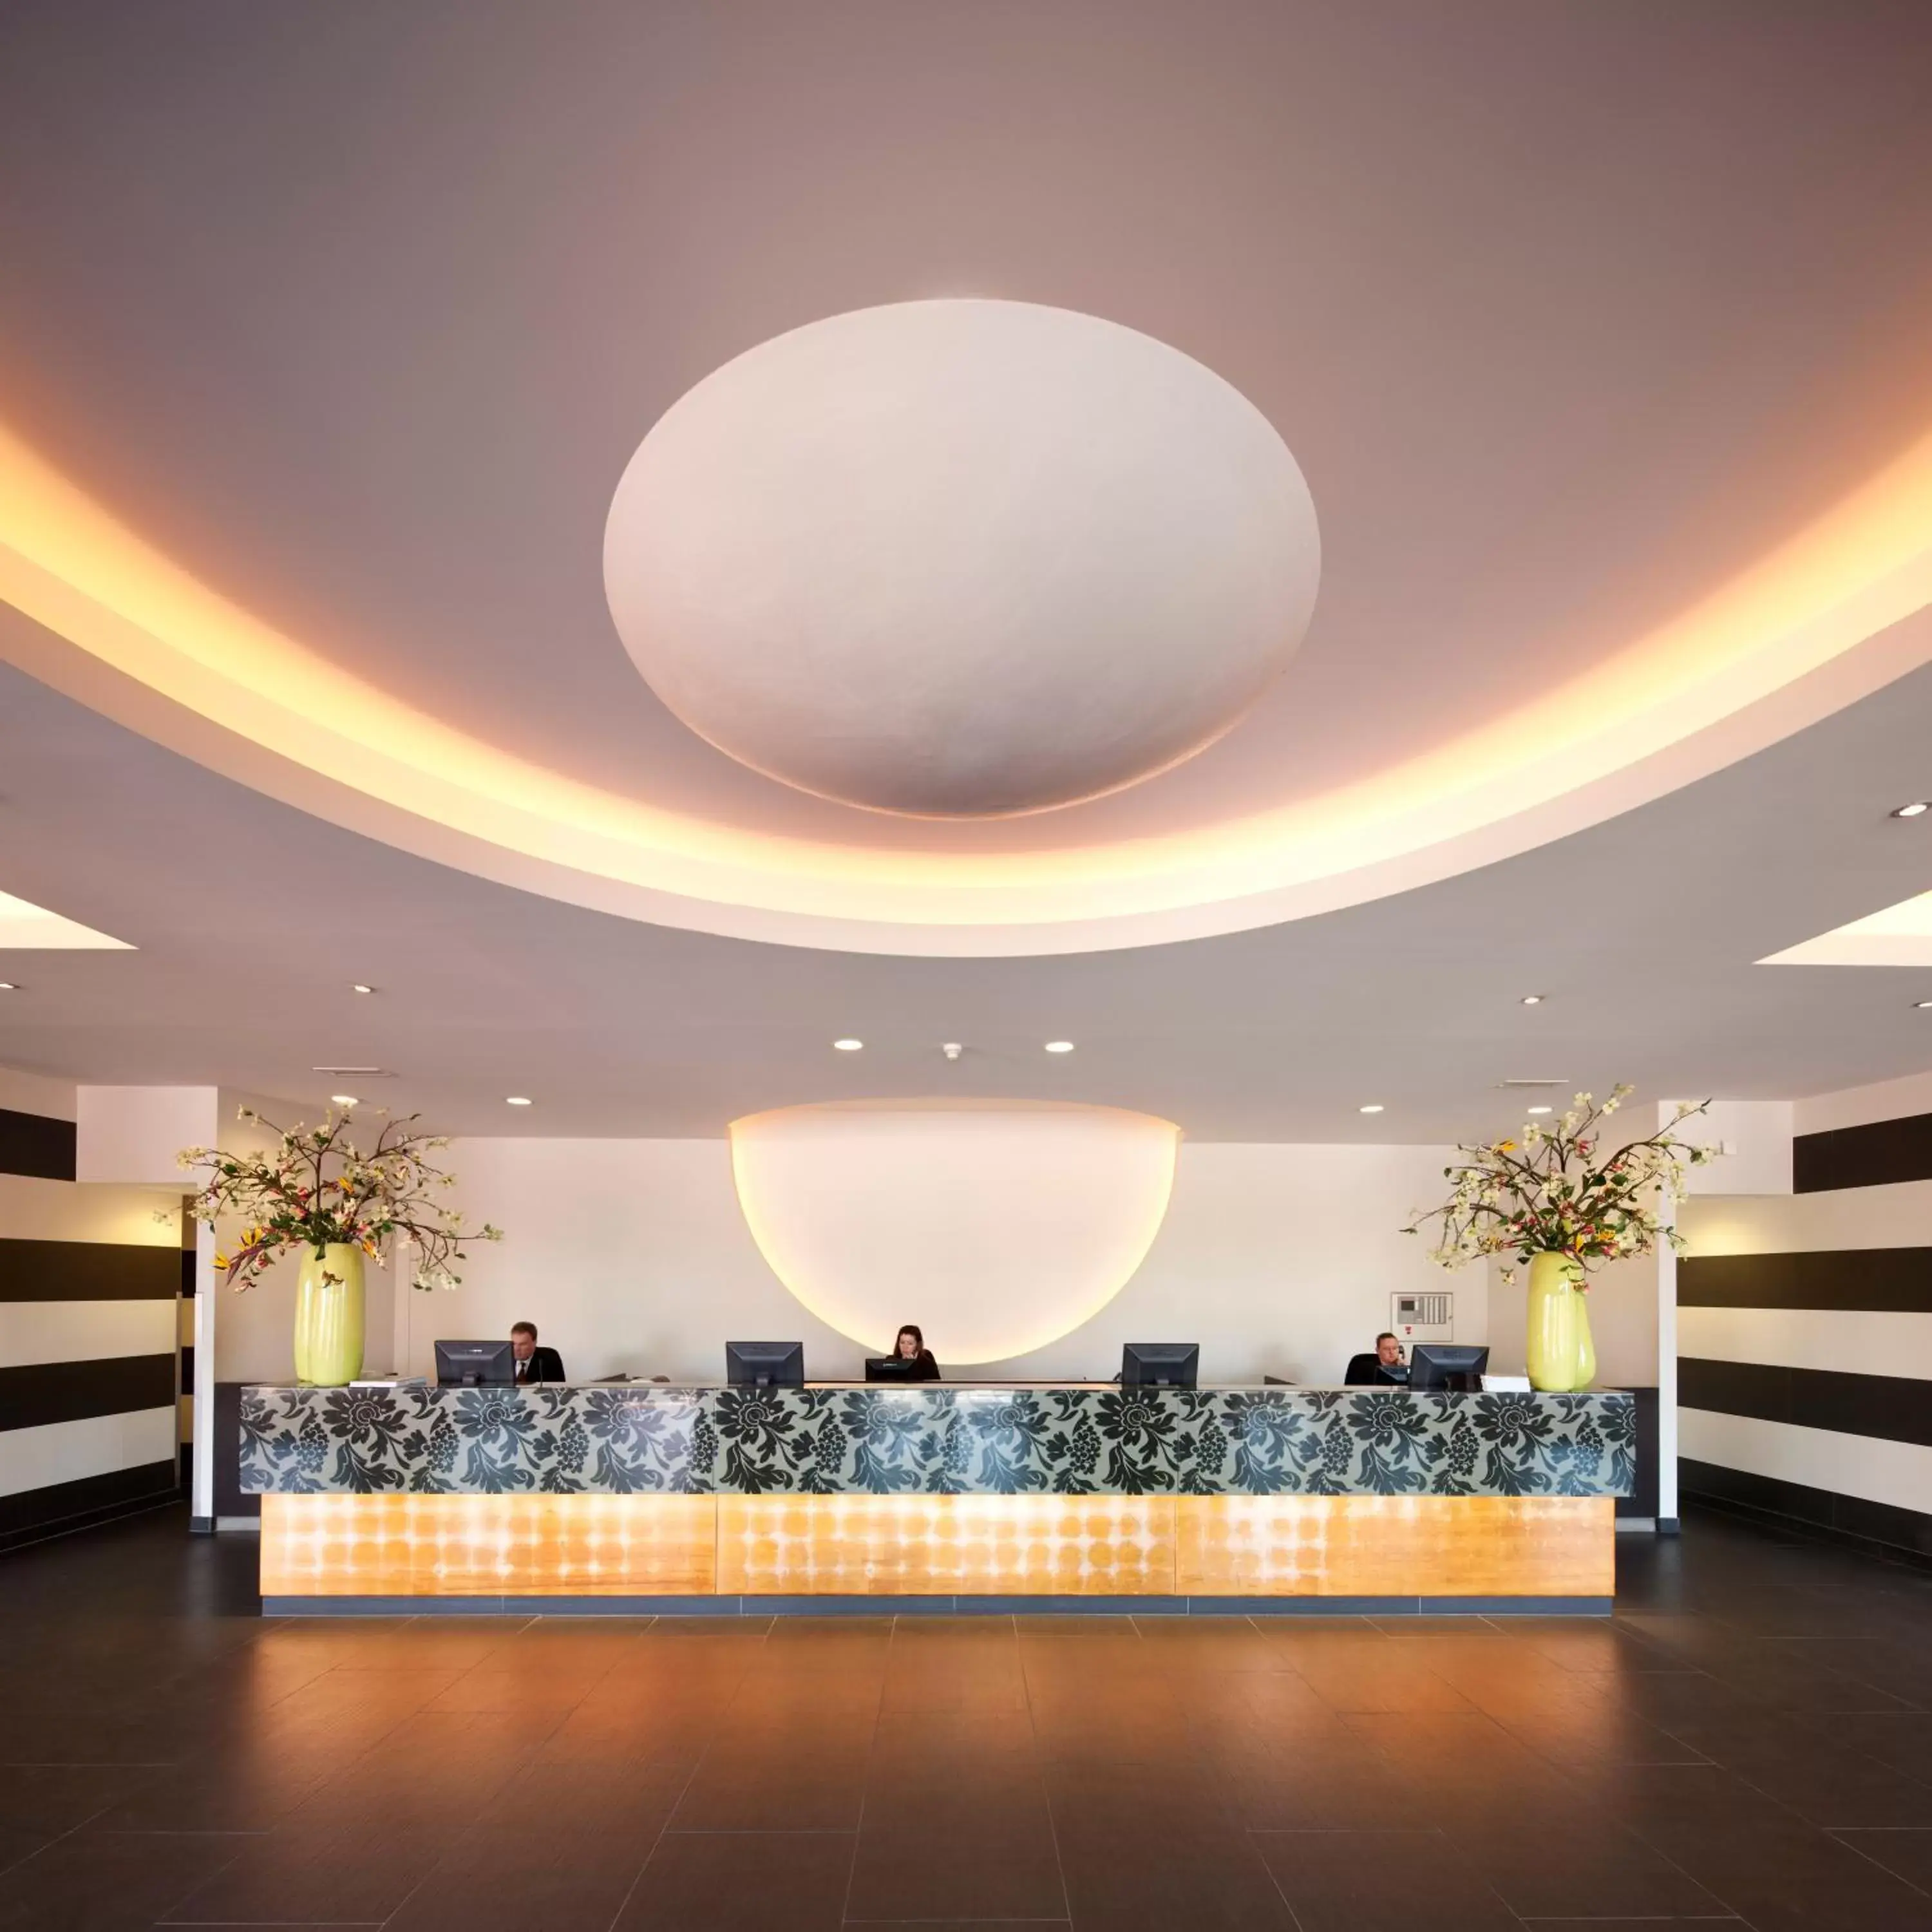 Lobby or reception in Van der Valk Hotel Hilversum/ De Witte Bergen